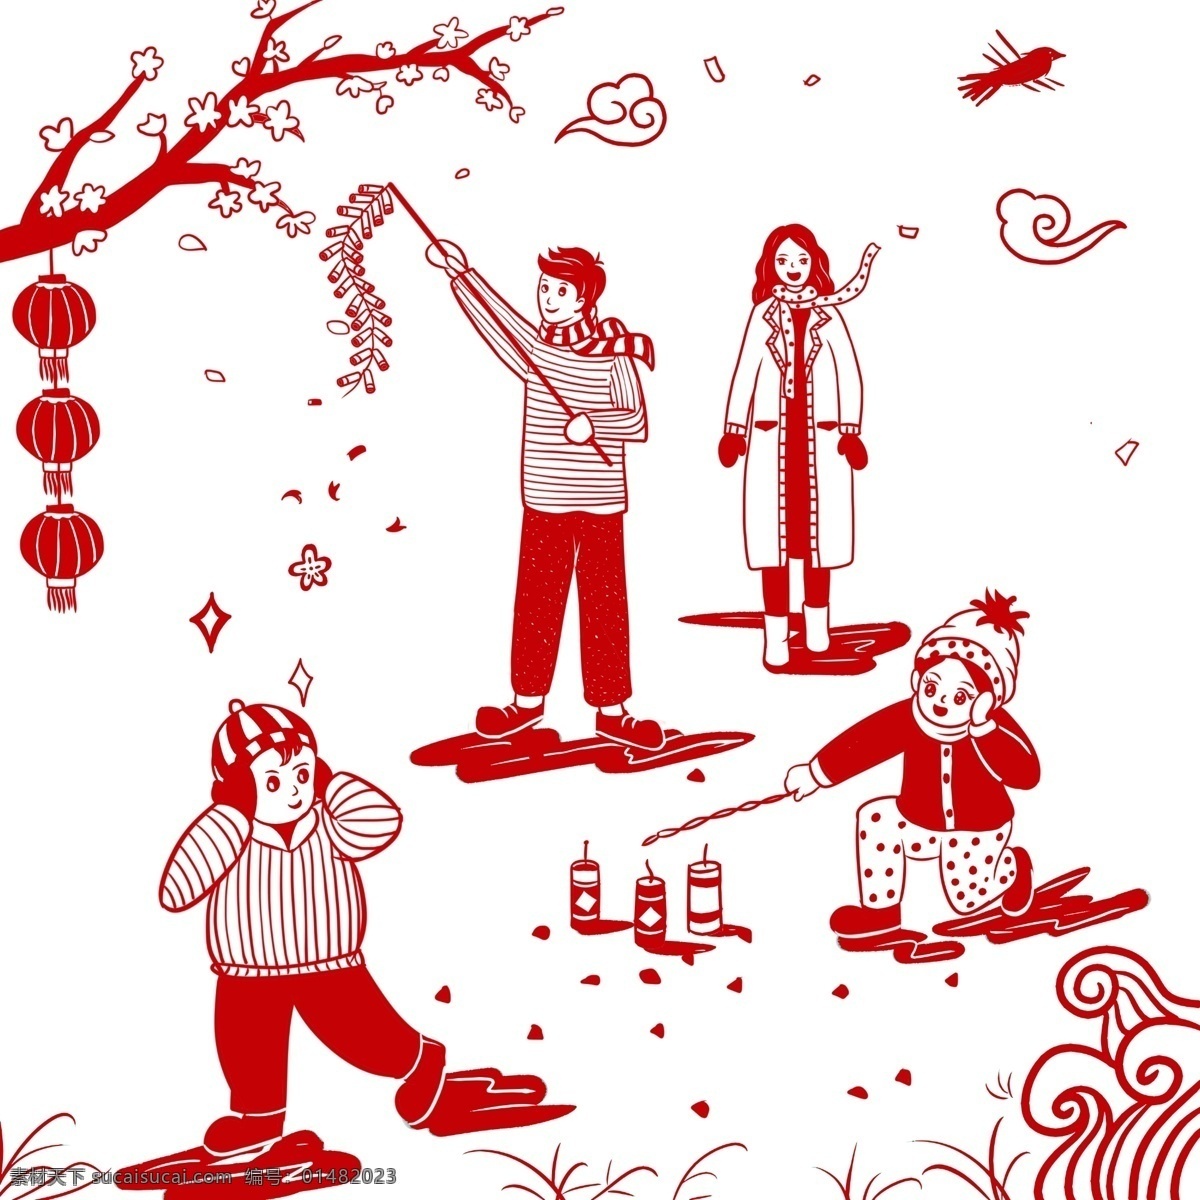 过年 一家人 放 鞭炮 传统 节日 喜庆 中国风 剪纸 红色 放鞭炮 爸爸 妈妈 孩子 高兴 幸福